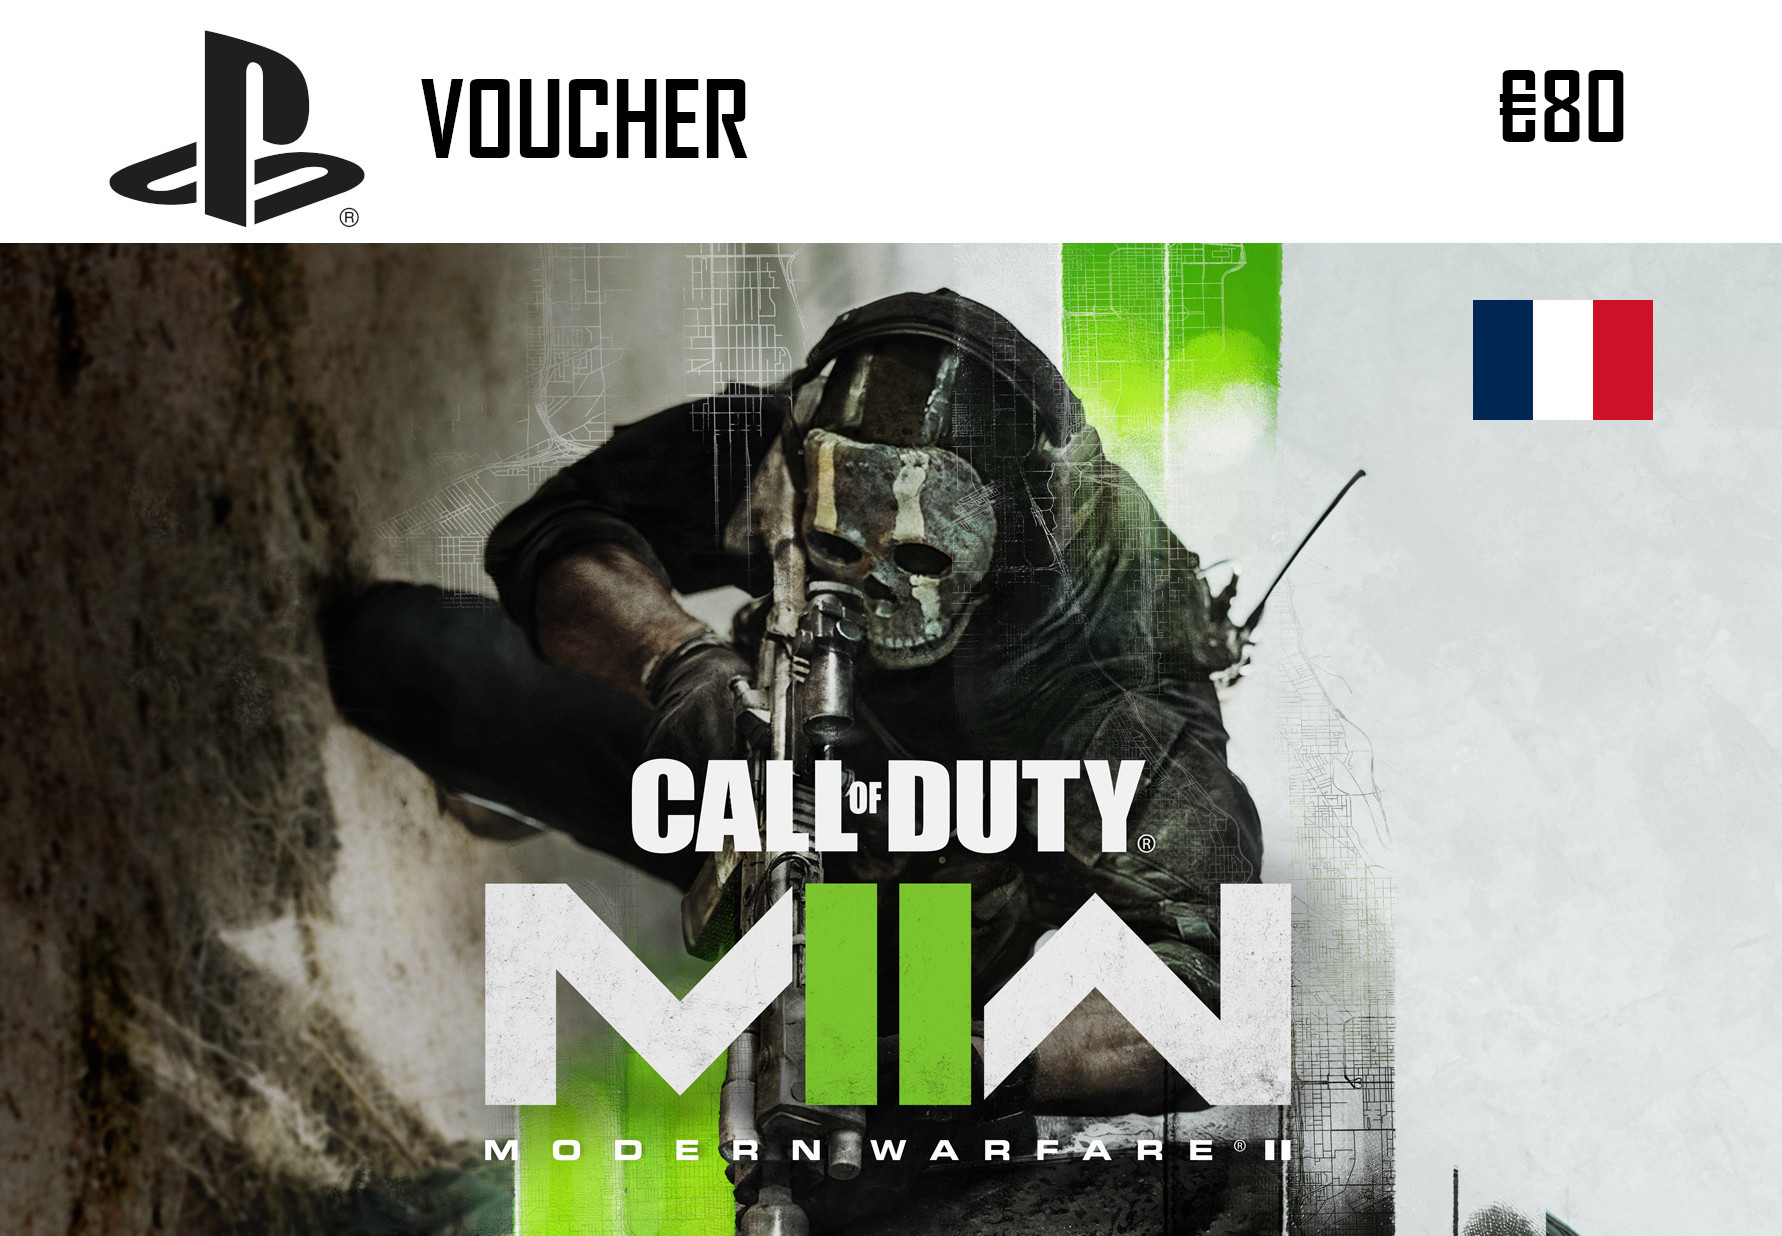 Call Of Duty: Modern Warfare II PlayStation Network Card €80 FR